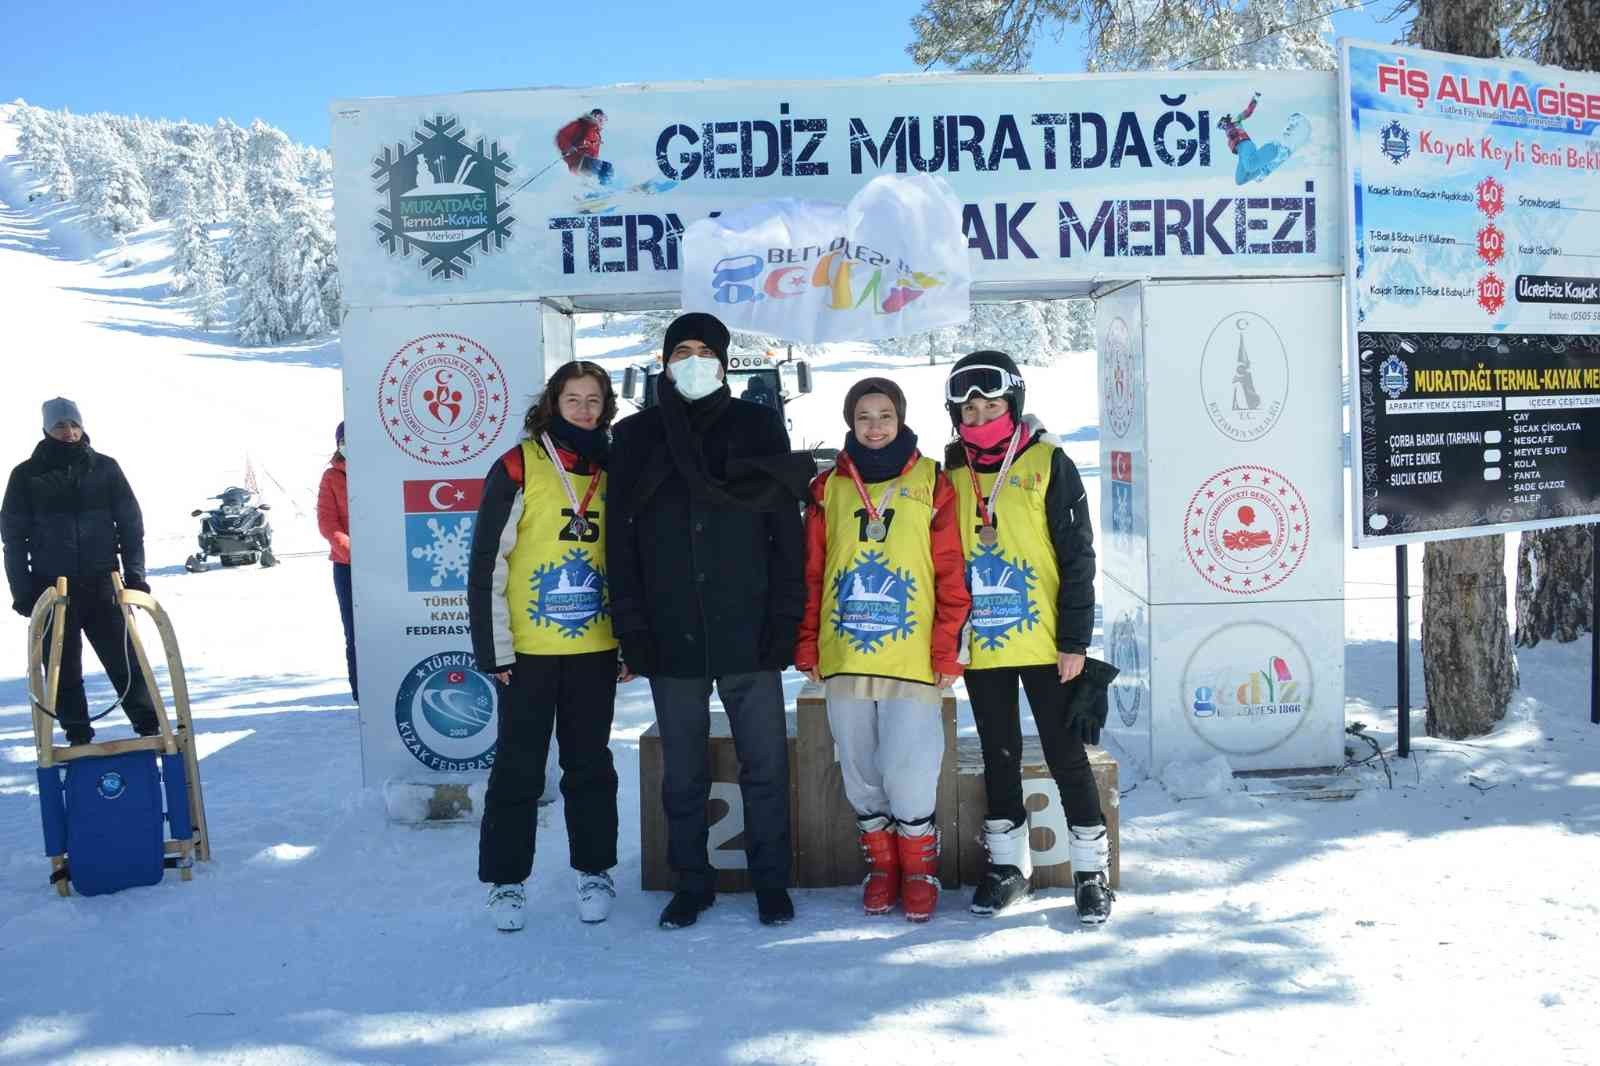 Gediz Muratdağı Termal Kayak Merkezi’nde kayak ve kızak yarışmaları #kutahya